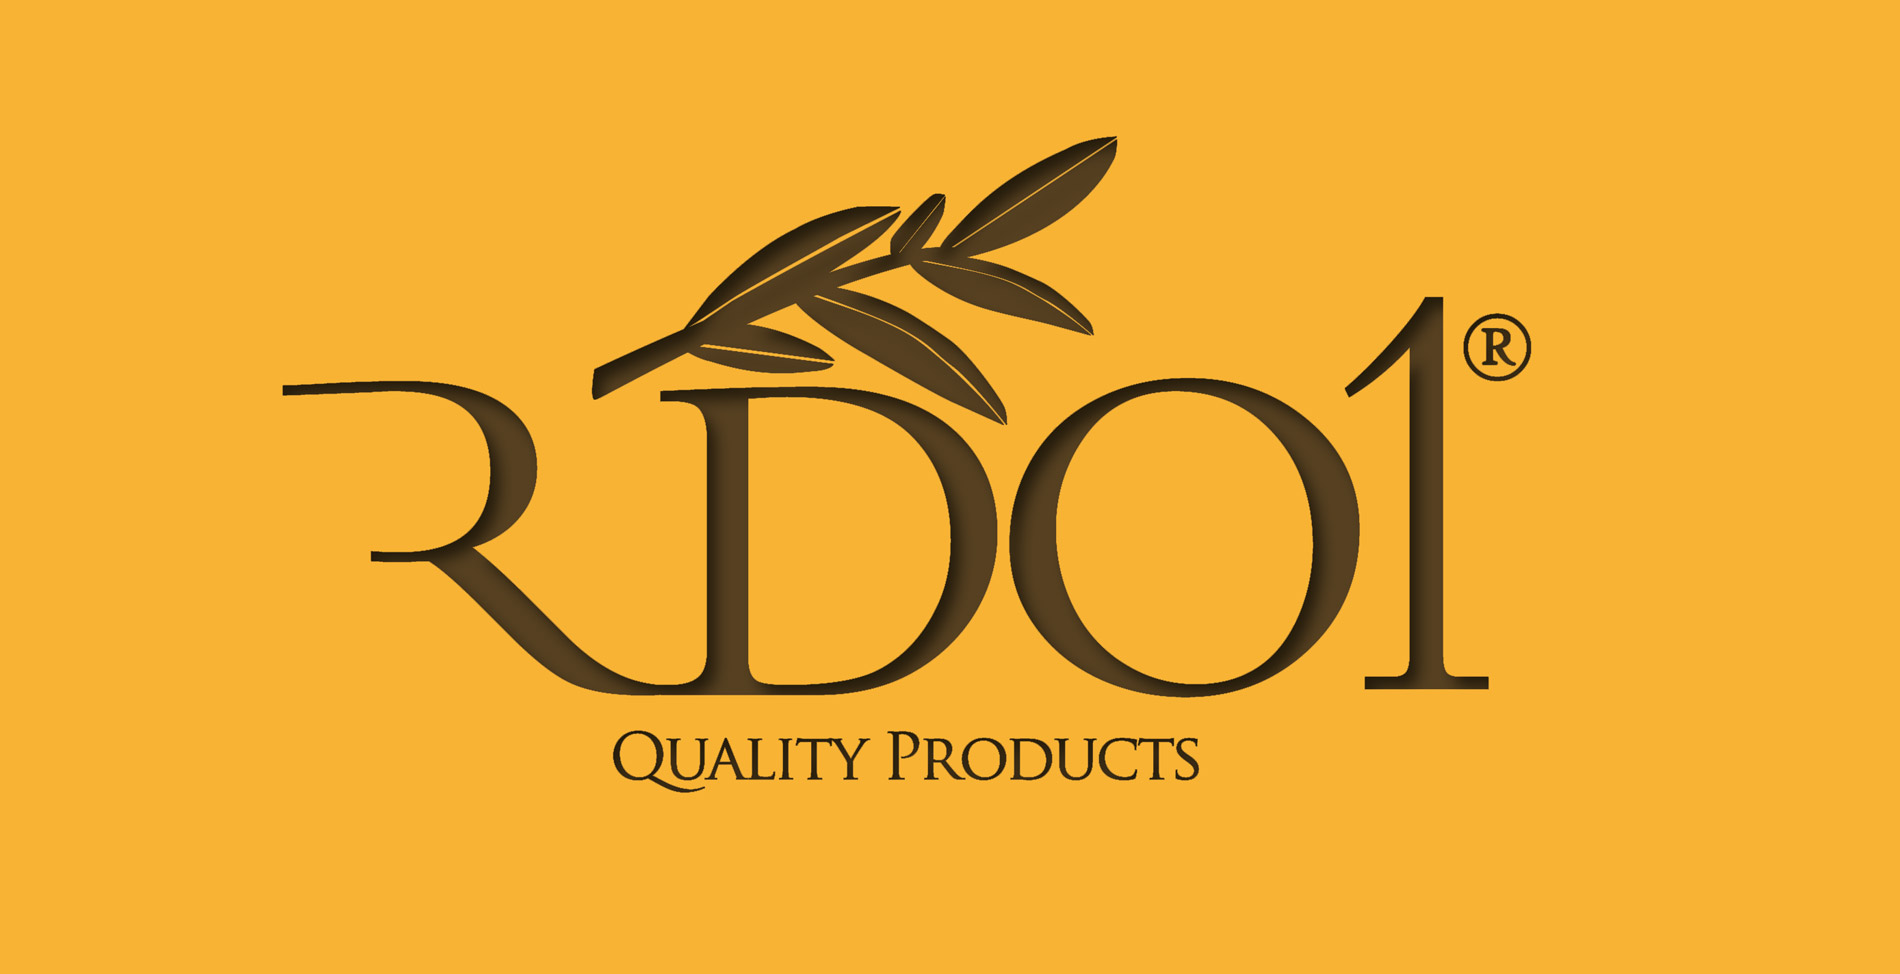 Diseño de logo y etiquetas para empresa exportadora de aceite de oliva virgen extra de alta calidad